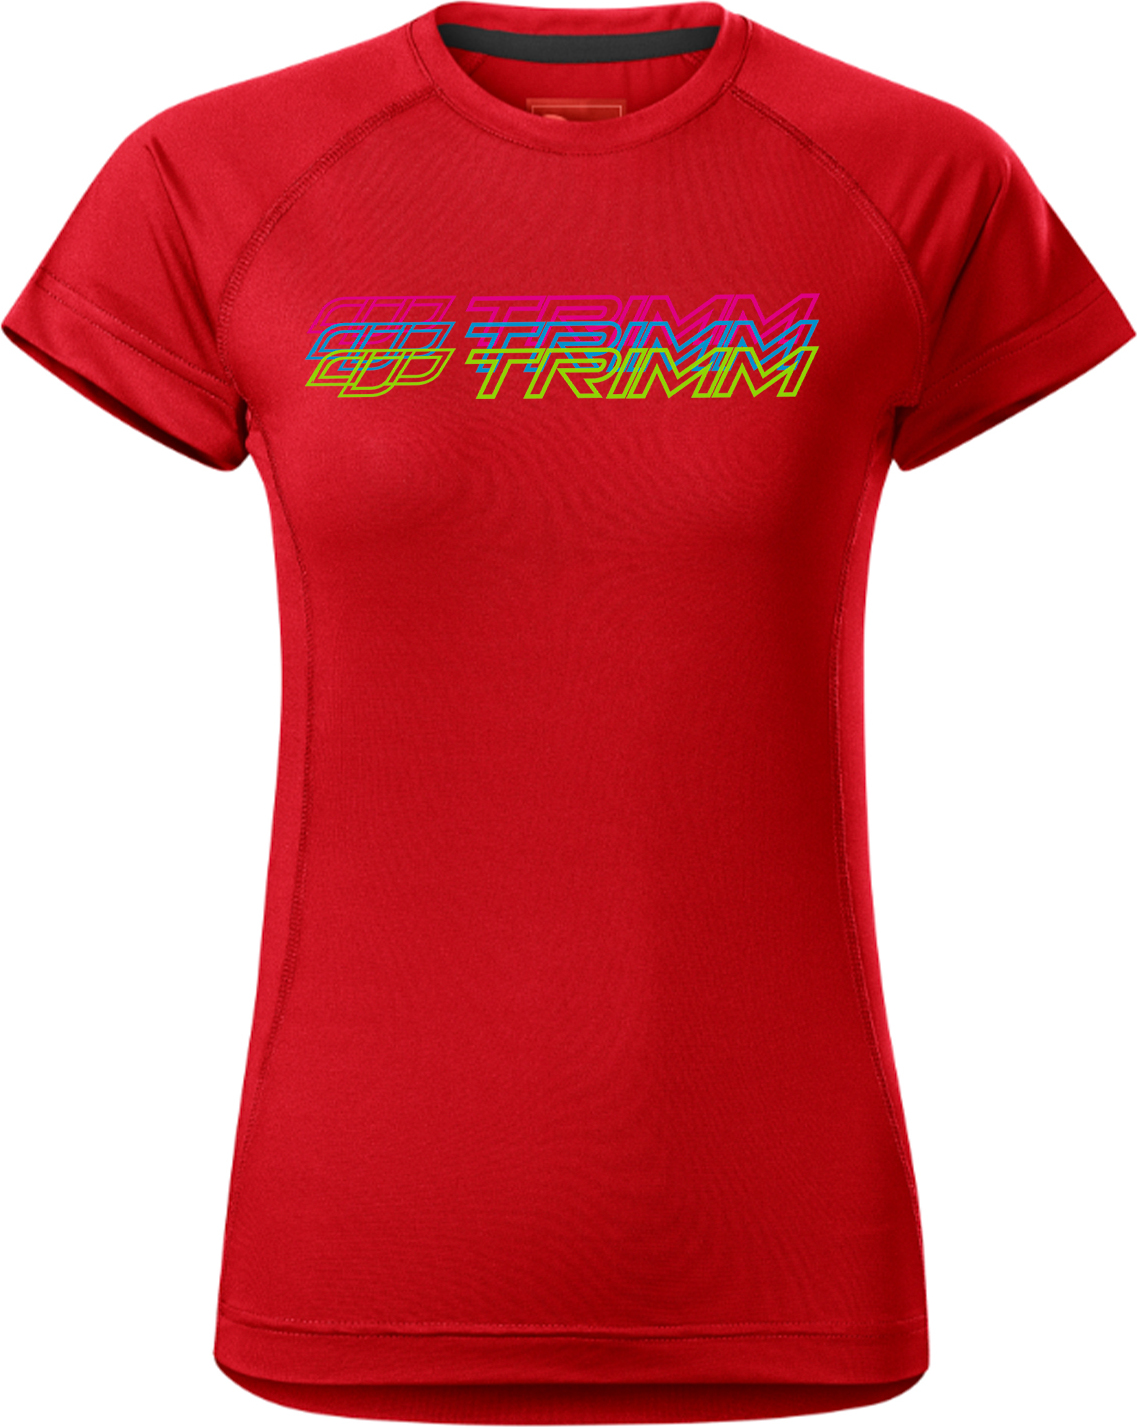 Dámské tričko TRIMM Destiny Lady červené Velikost: XXL, Barva: red